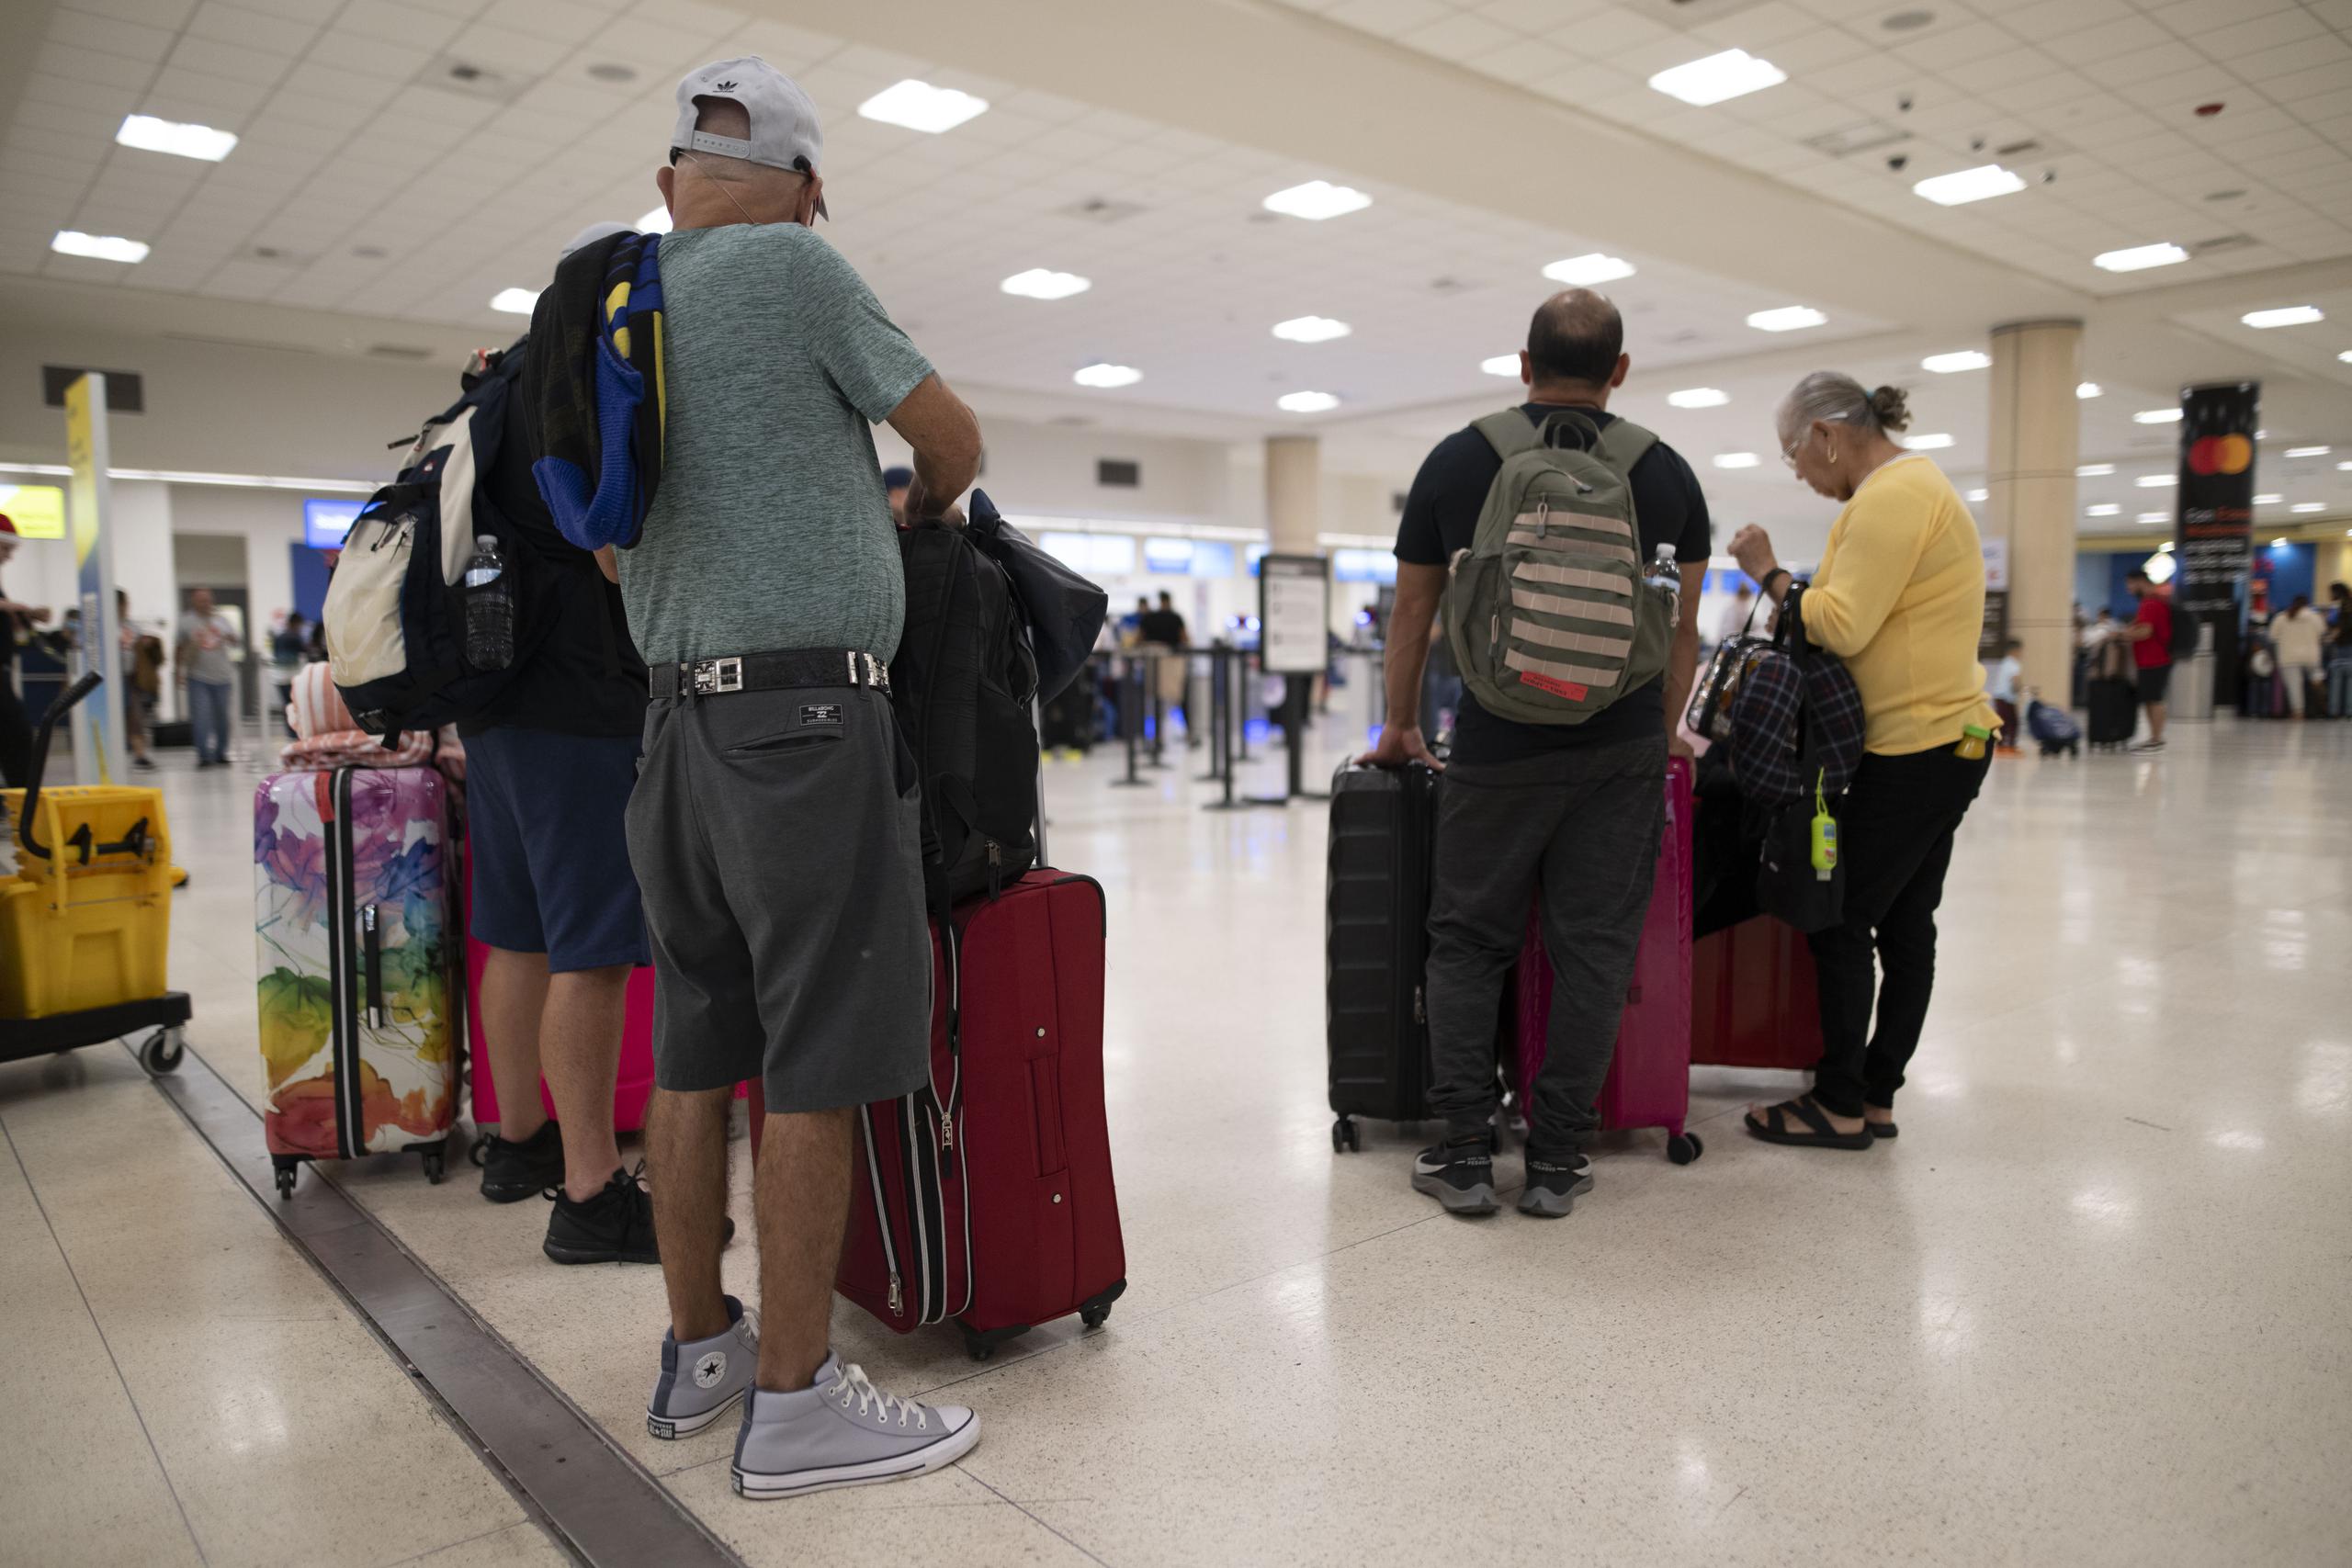 Unos 12 viajes que iban a salir del aeropuerto internacional Luis Muñoz Marín han sido cancelados, mientras otros cinco enfrentan retrasos, señala un informe de operaciones irregulares.